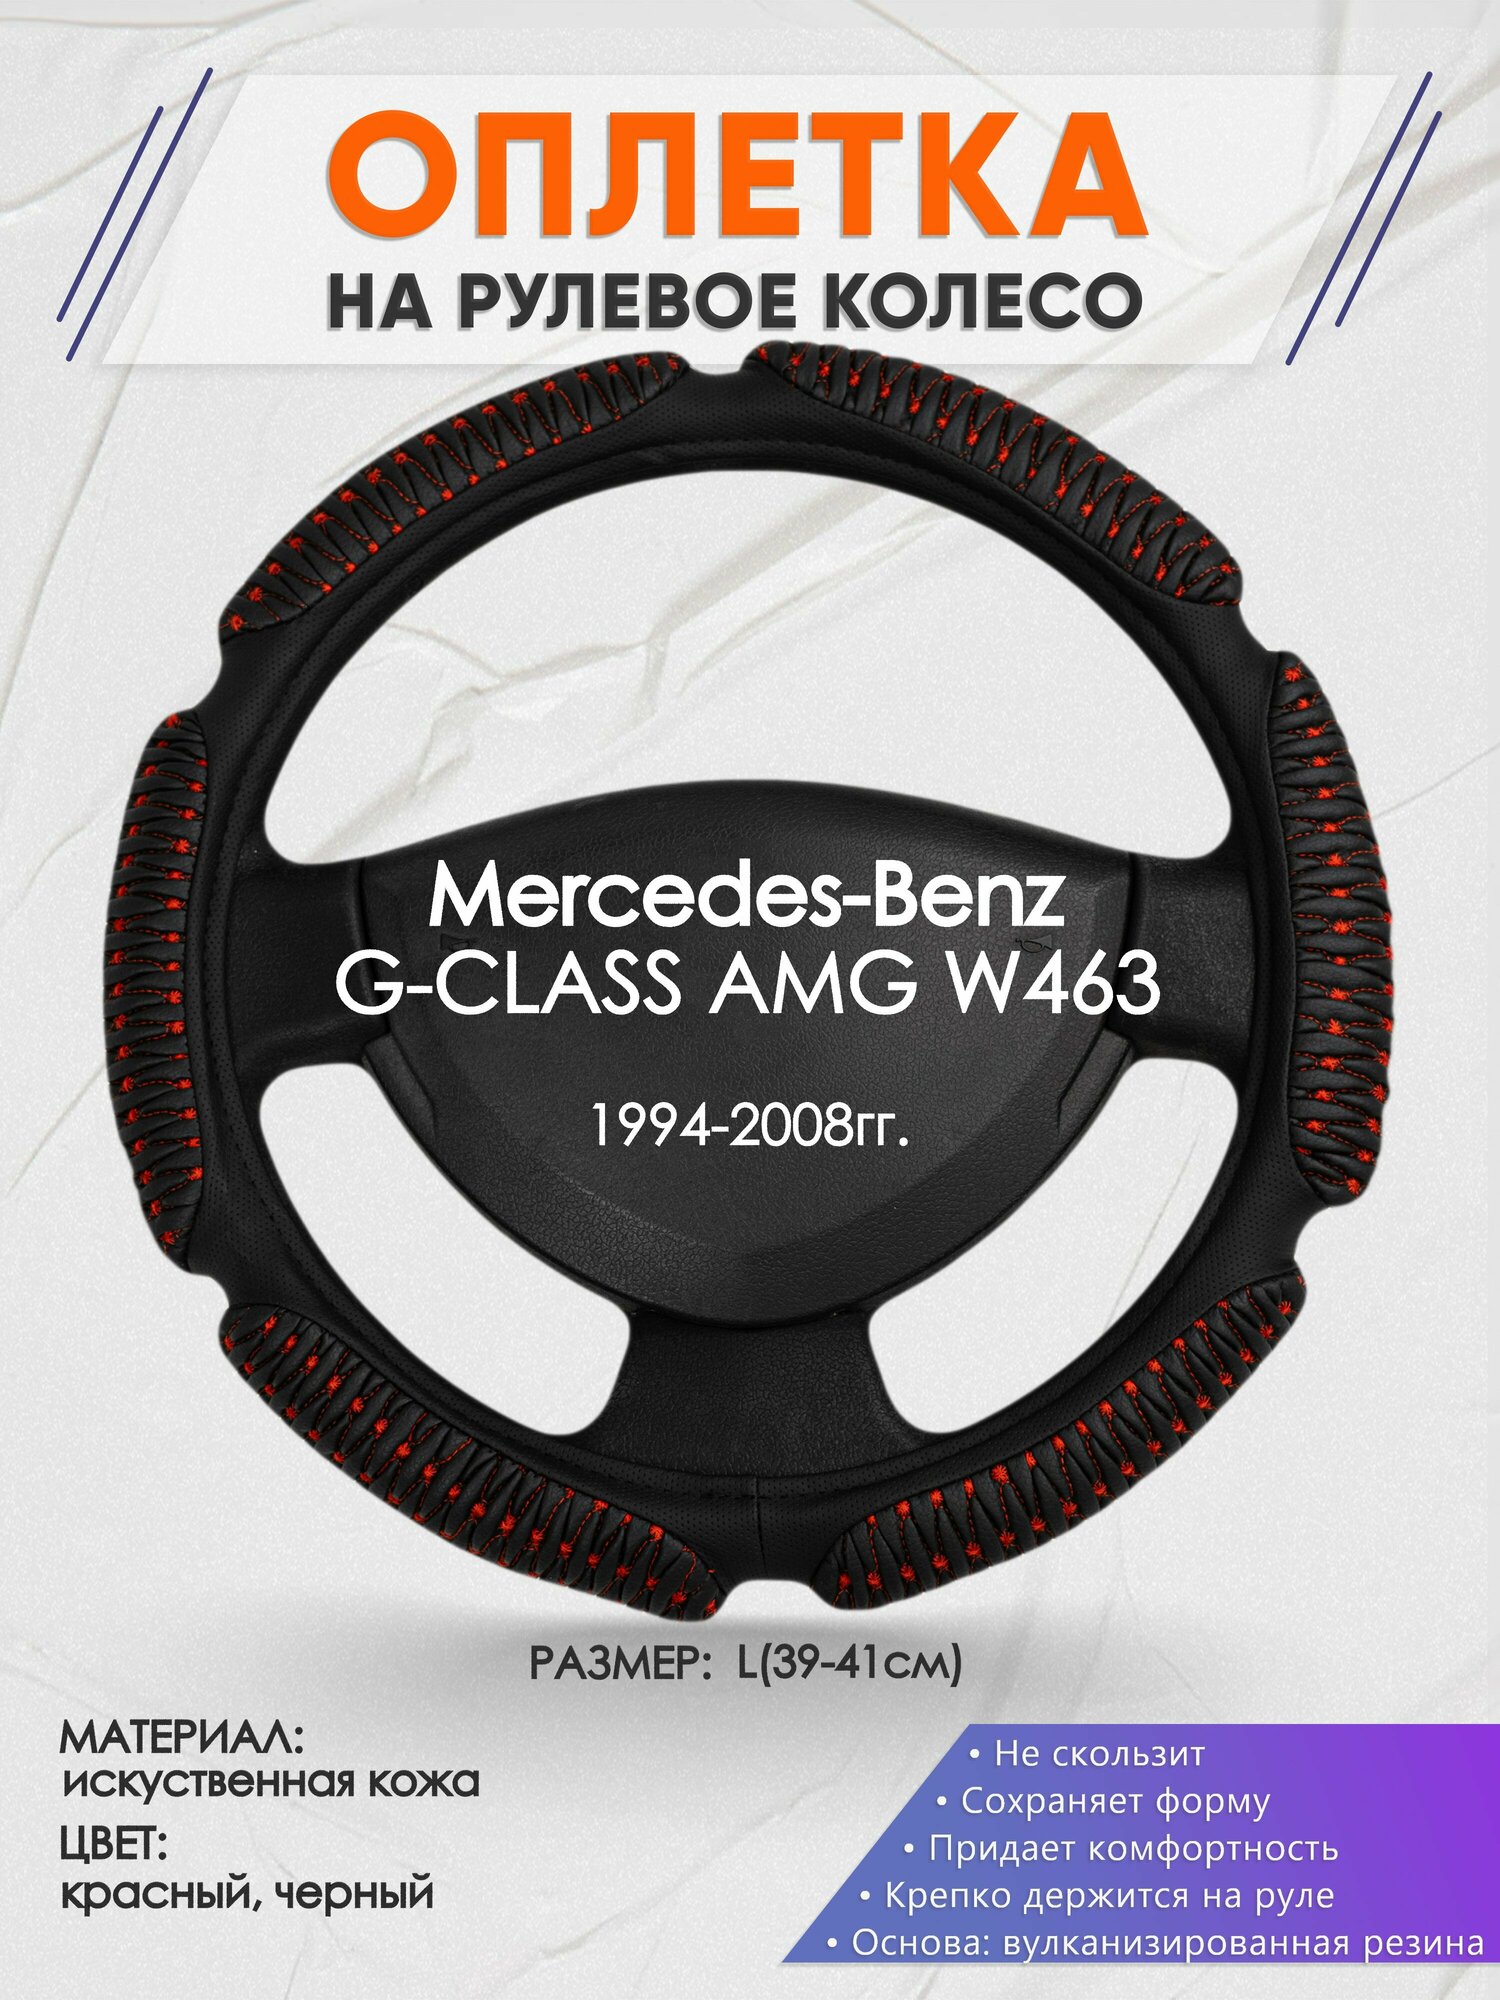 Оплетка на руль для Mercedes-Benz G-CLASS AMG W463(Мерседес Бенц Г Класс) 1994-2008, L(39-41см), Искусственная кожа 01